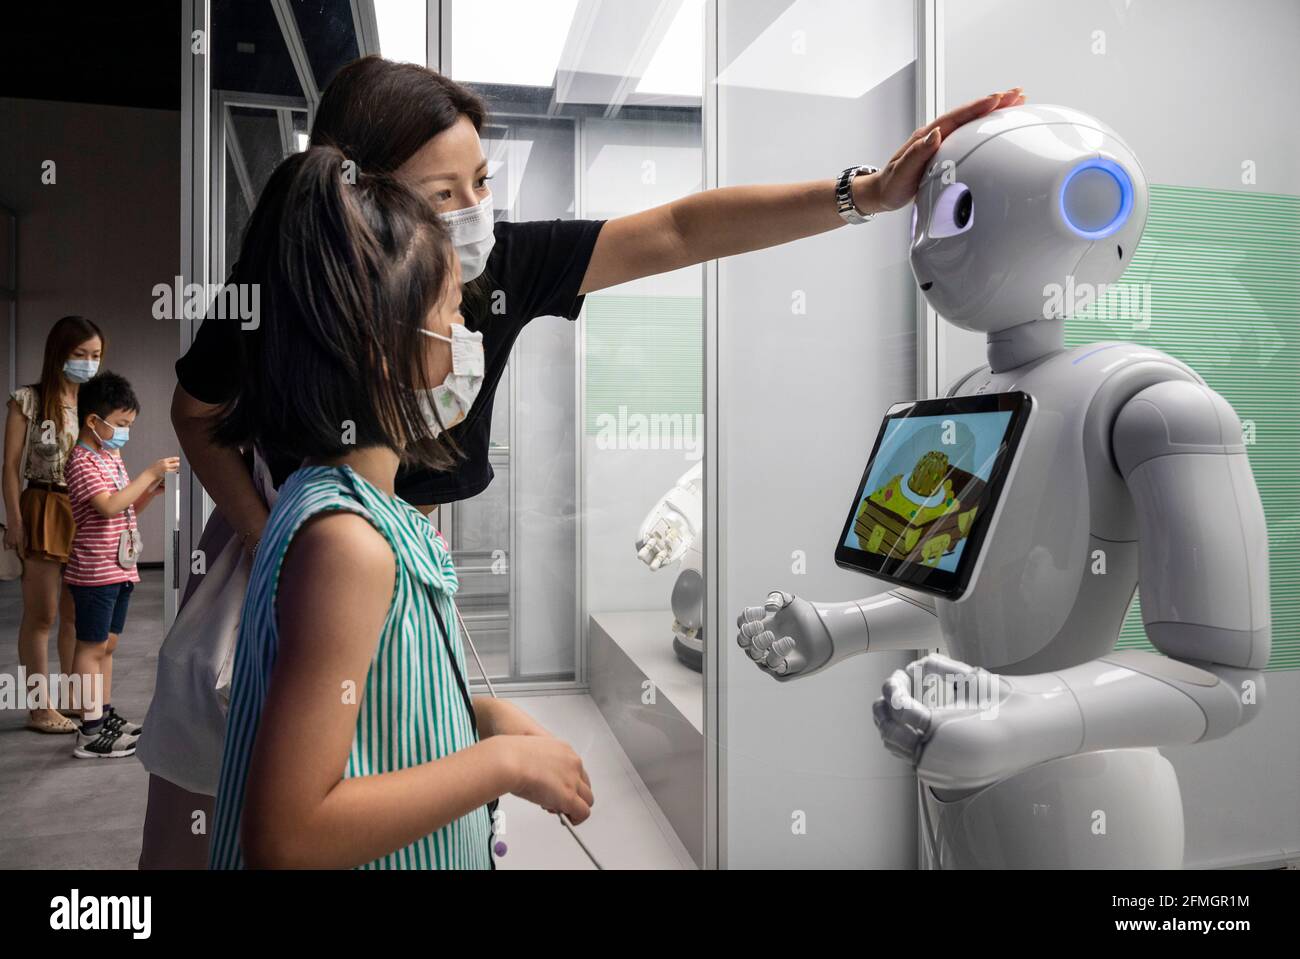 Hongkong, China. Mai 2021. Eine Frau berührt den Kopf eines Roboters  während der Ausstellung „ROBOTER“ im Hong Kong Science Museum in Hongkong  am 8. Mai 2021. Die Ausstellung untersucht die 500-jährige Geschichte